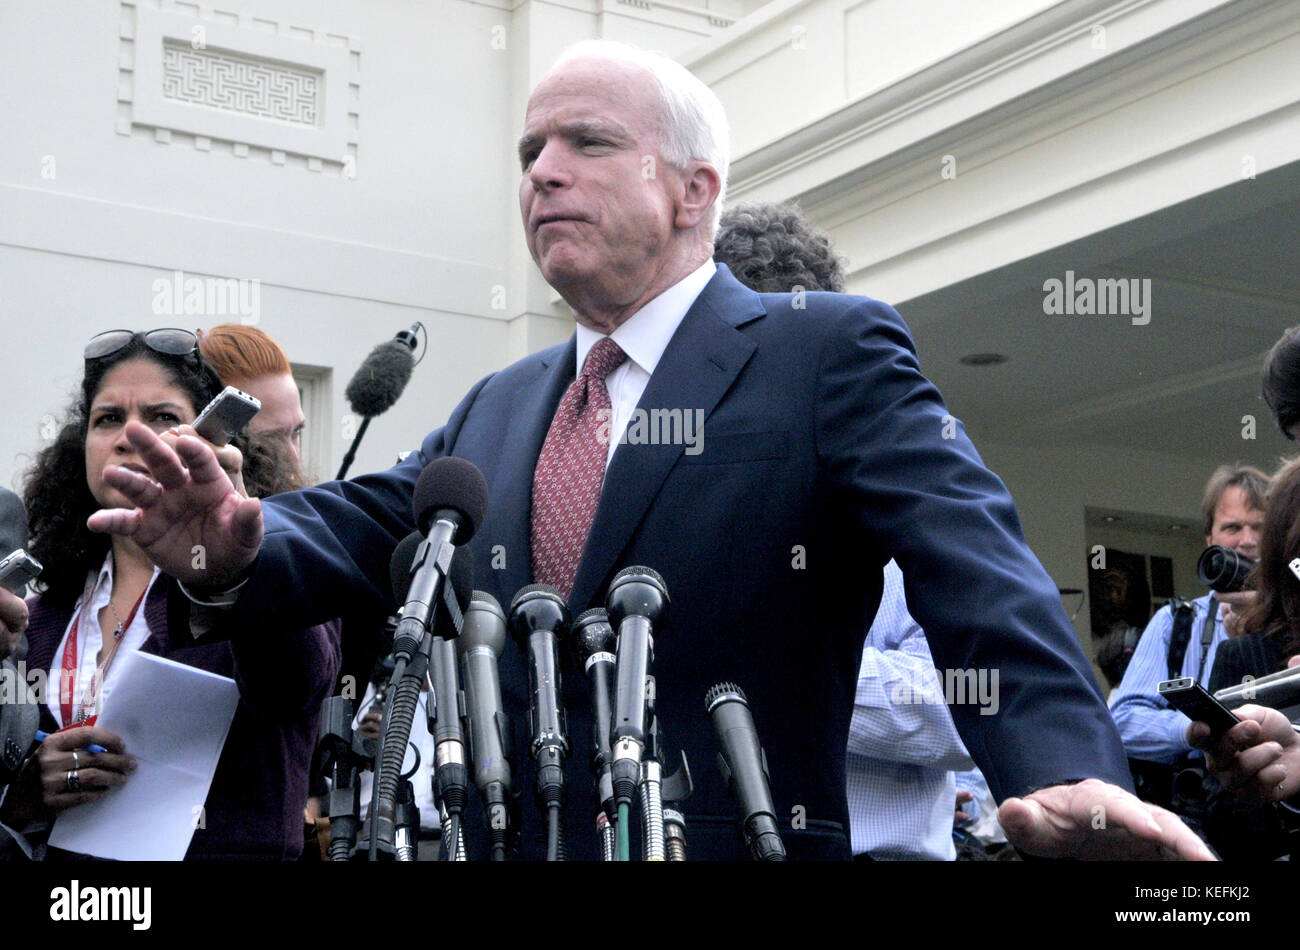 Washington, DC - Oktober 6, 2009 -- United States Senator John McCain (Republikaner aus Arizona) macht Anmerkungen nach einem Treffen mit USA-Präsident Barack Obama auf die US-Strategie in Afghanistan am Dienstag, 6. Oktober 2009. Quelle: Ron Sachs/Pool über CNP/MediaPunch Stockfoto